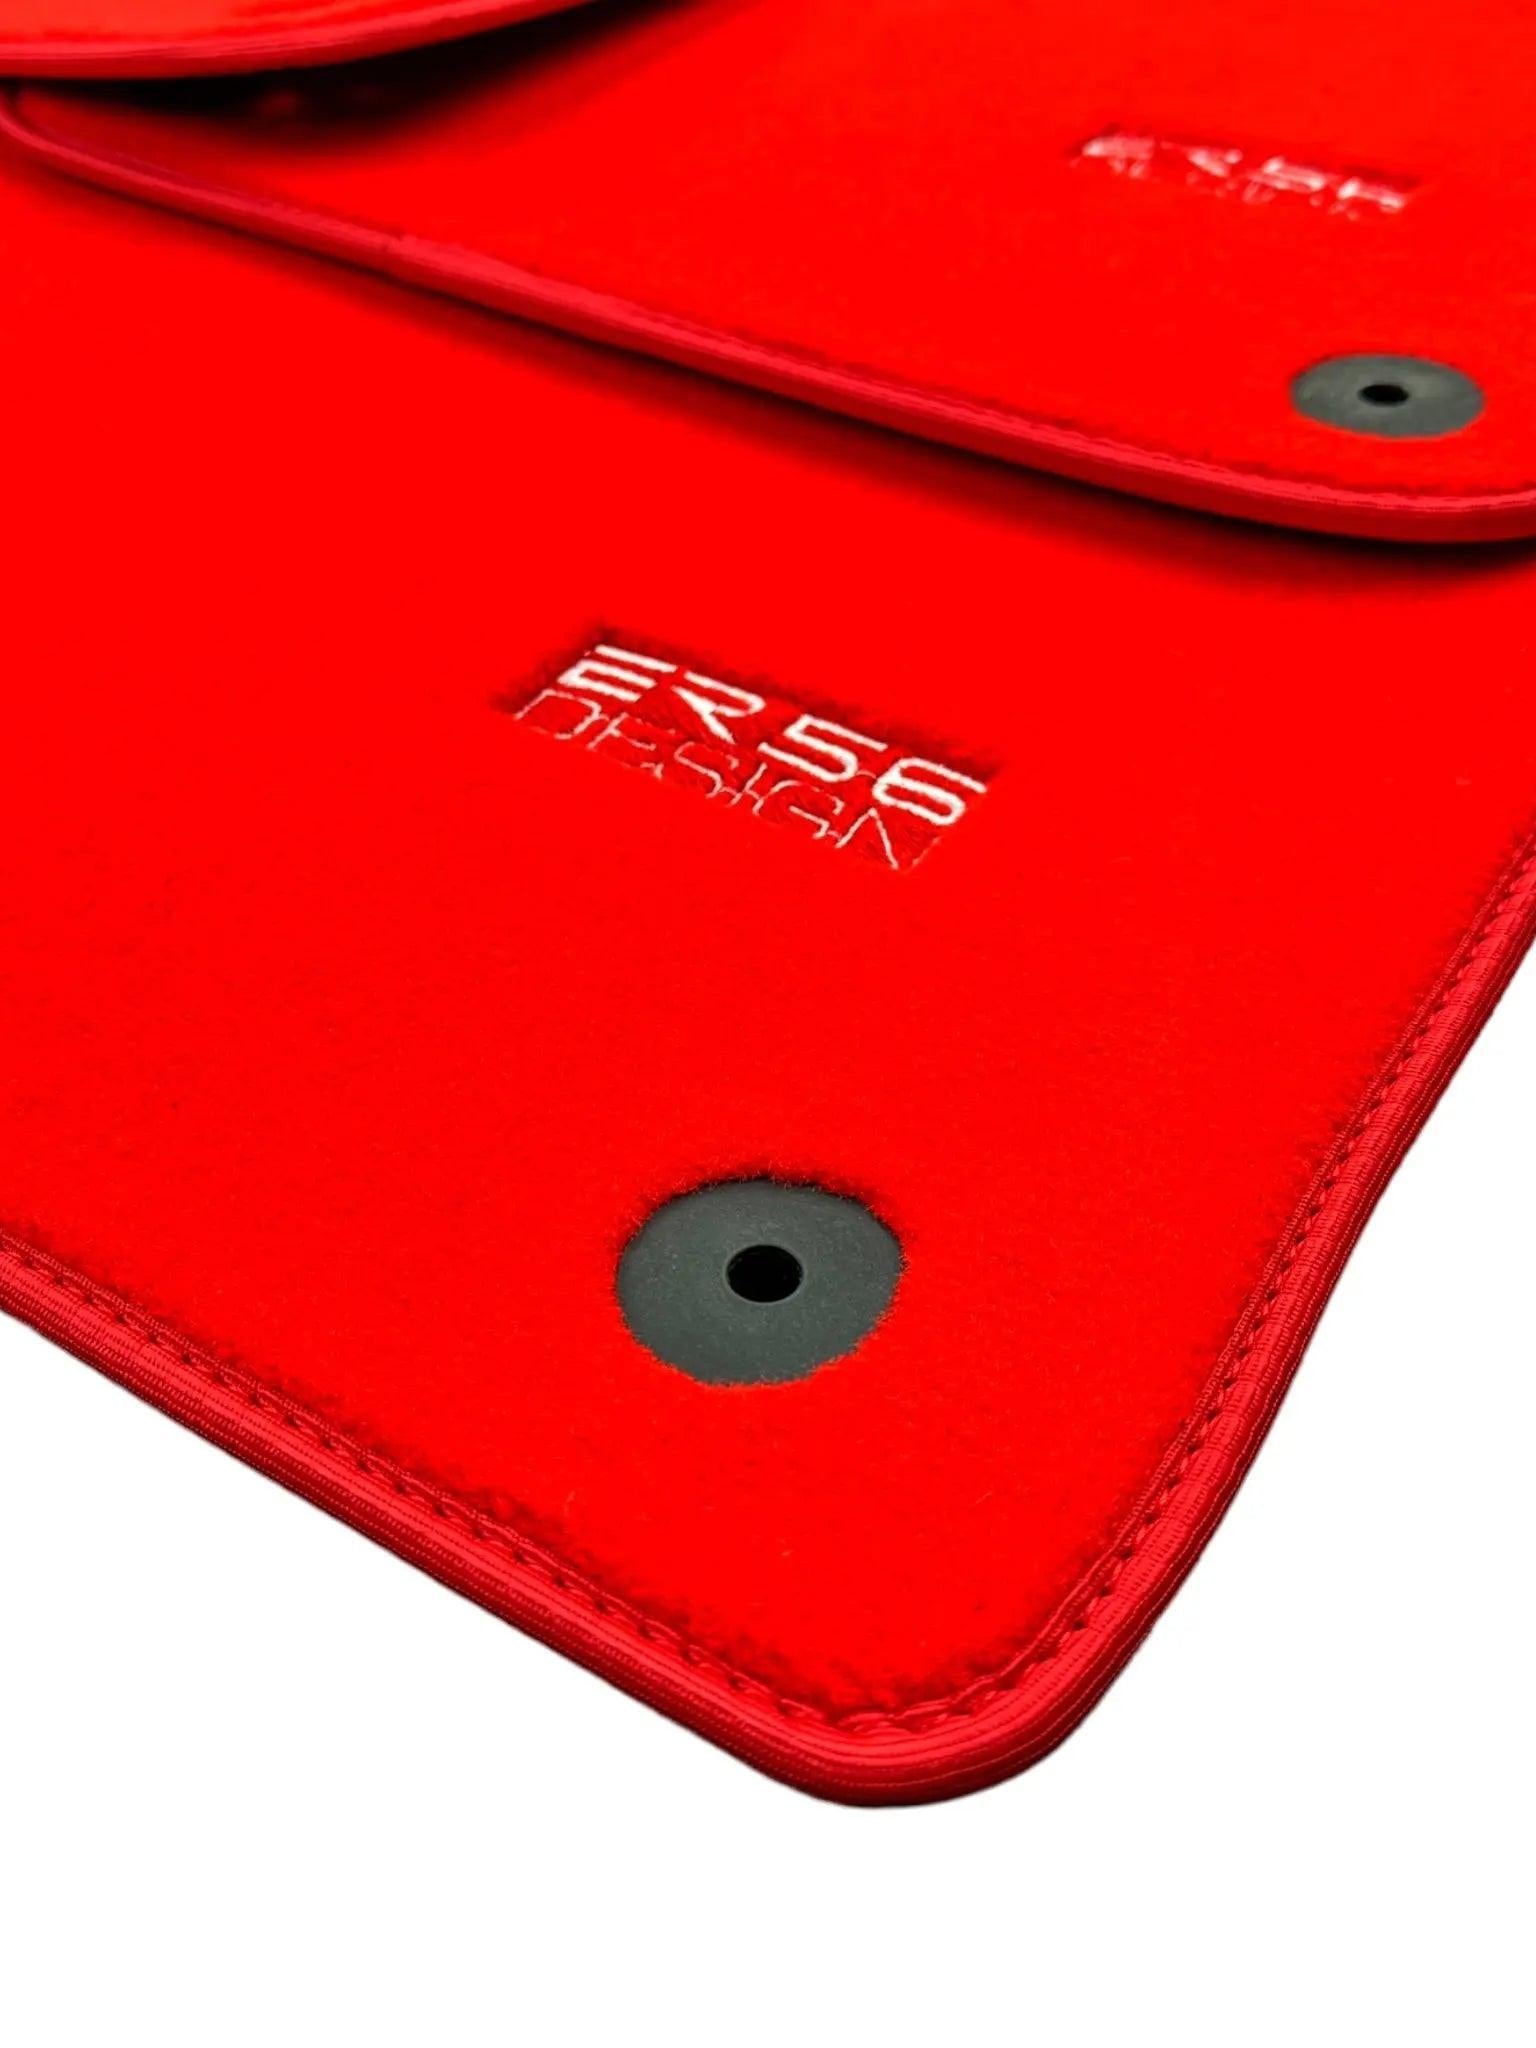 Red Floor Mats for Audi Q7 4L (2006-2015) | ER56 Design